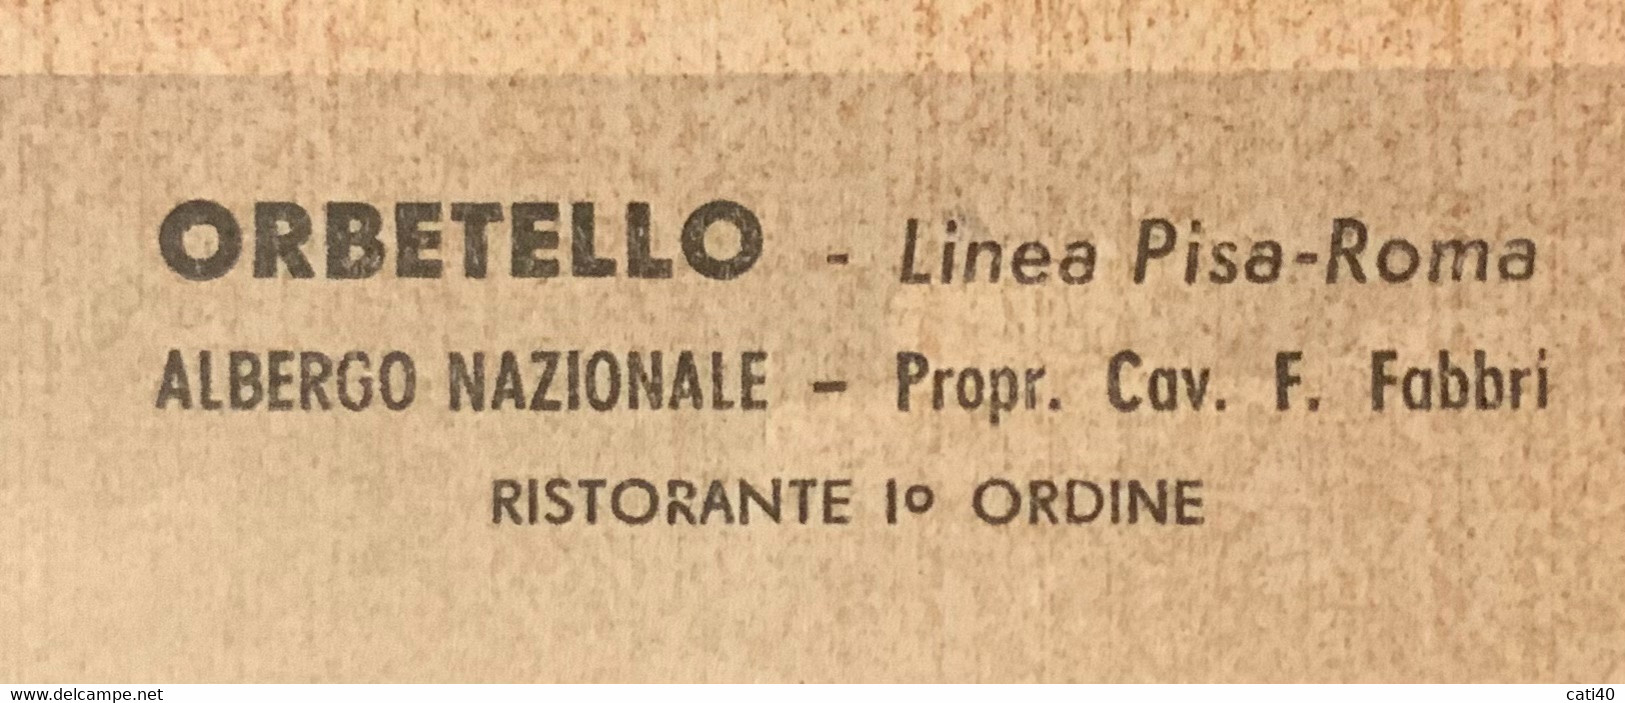 ORBETELLO - LINEA PISA-ROMA - ALBERGO NAZIONALE PRO.F.FABBRI DEL 23/4/49 - MOLTE FIRME - LGF1 - Grosseto